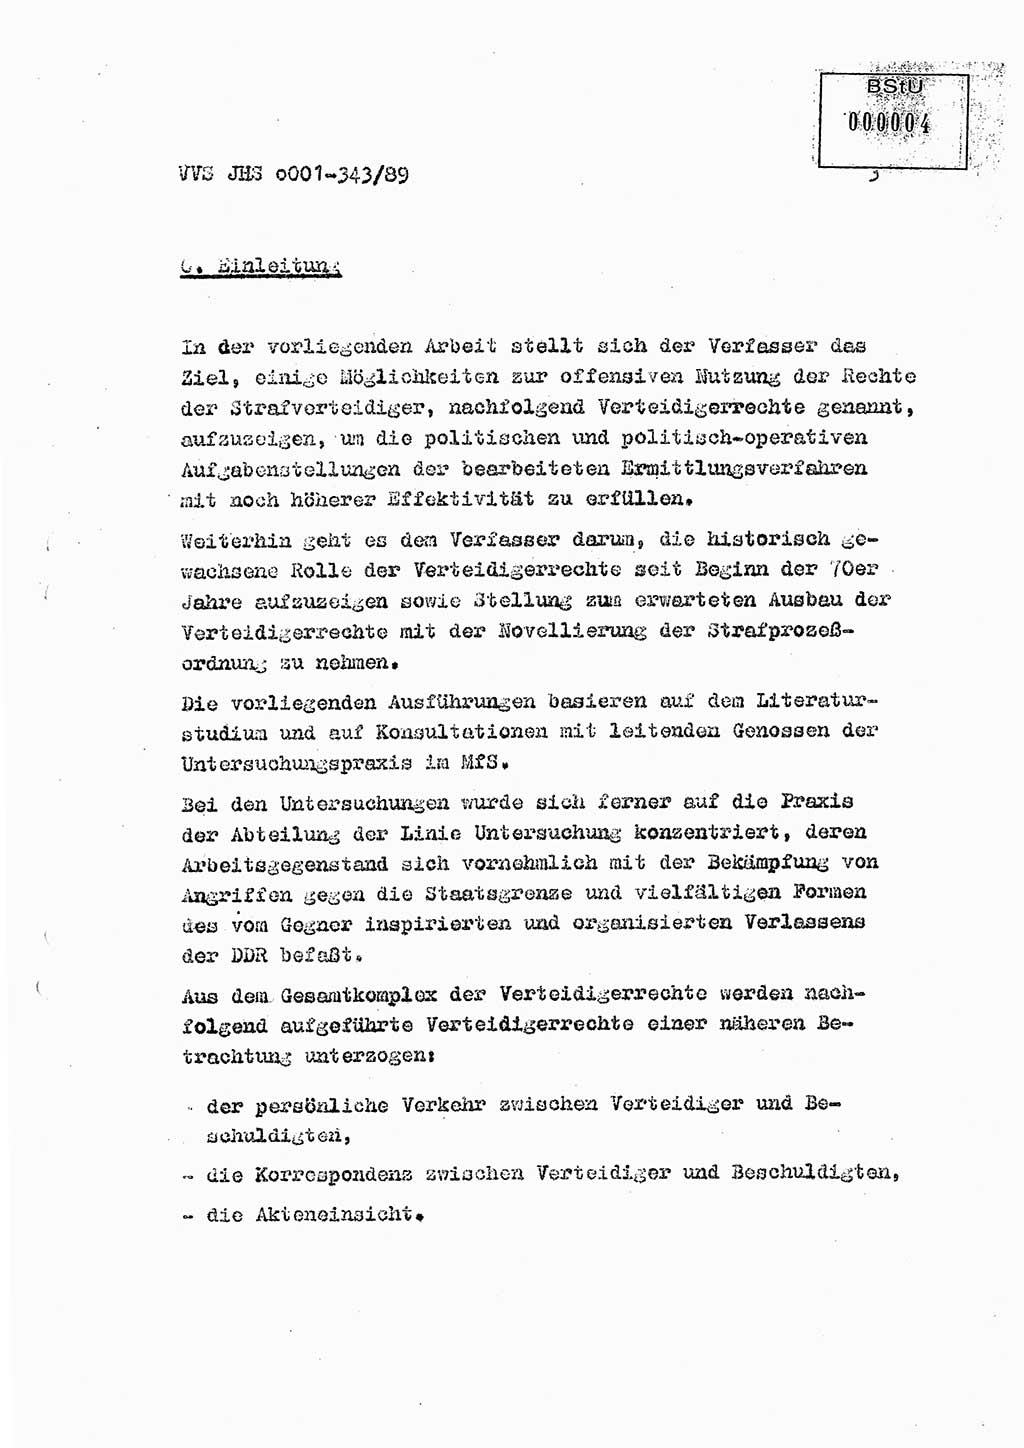 Diplomarbeit Offiziersschüler Axel Henschke (HA Ⅸ/9), Ministerium für Staatssicherheit (MfS) [Deutsche Demokratische Republik (DDR)], Juristische Hochschule (JHS), Vertrauliche Verschlußsache (VVS) o001-343/89, Potsdam 1989, Seite 3 (Dipl.-Arb. MfS DDR JHS VVS o001-343/89 1989, S. 3)